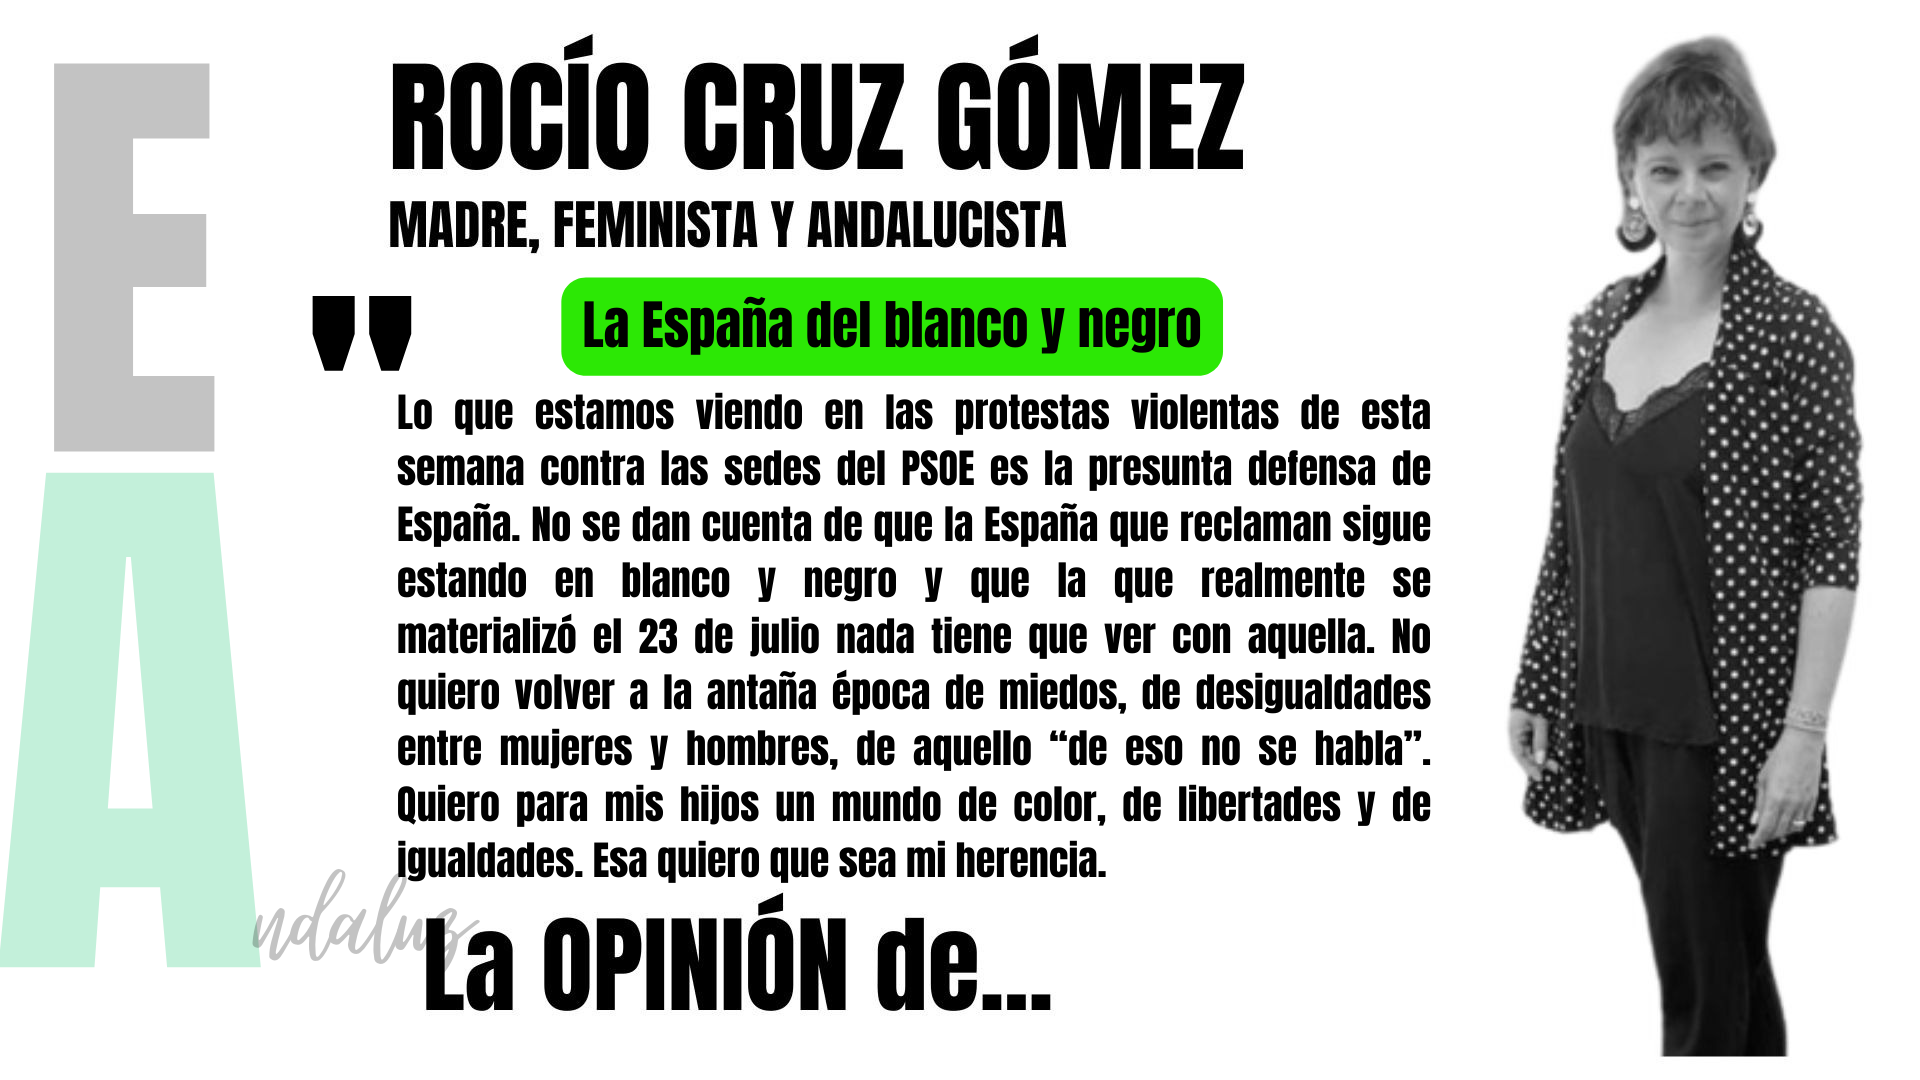 Artículo de Rocío Cruz Gómez, madre, andalucista y feminista: "La España en blanco y negro"